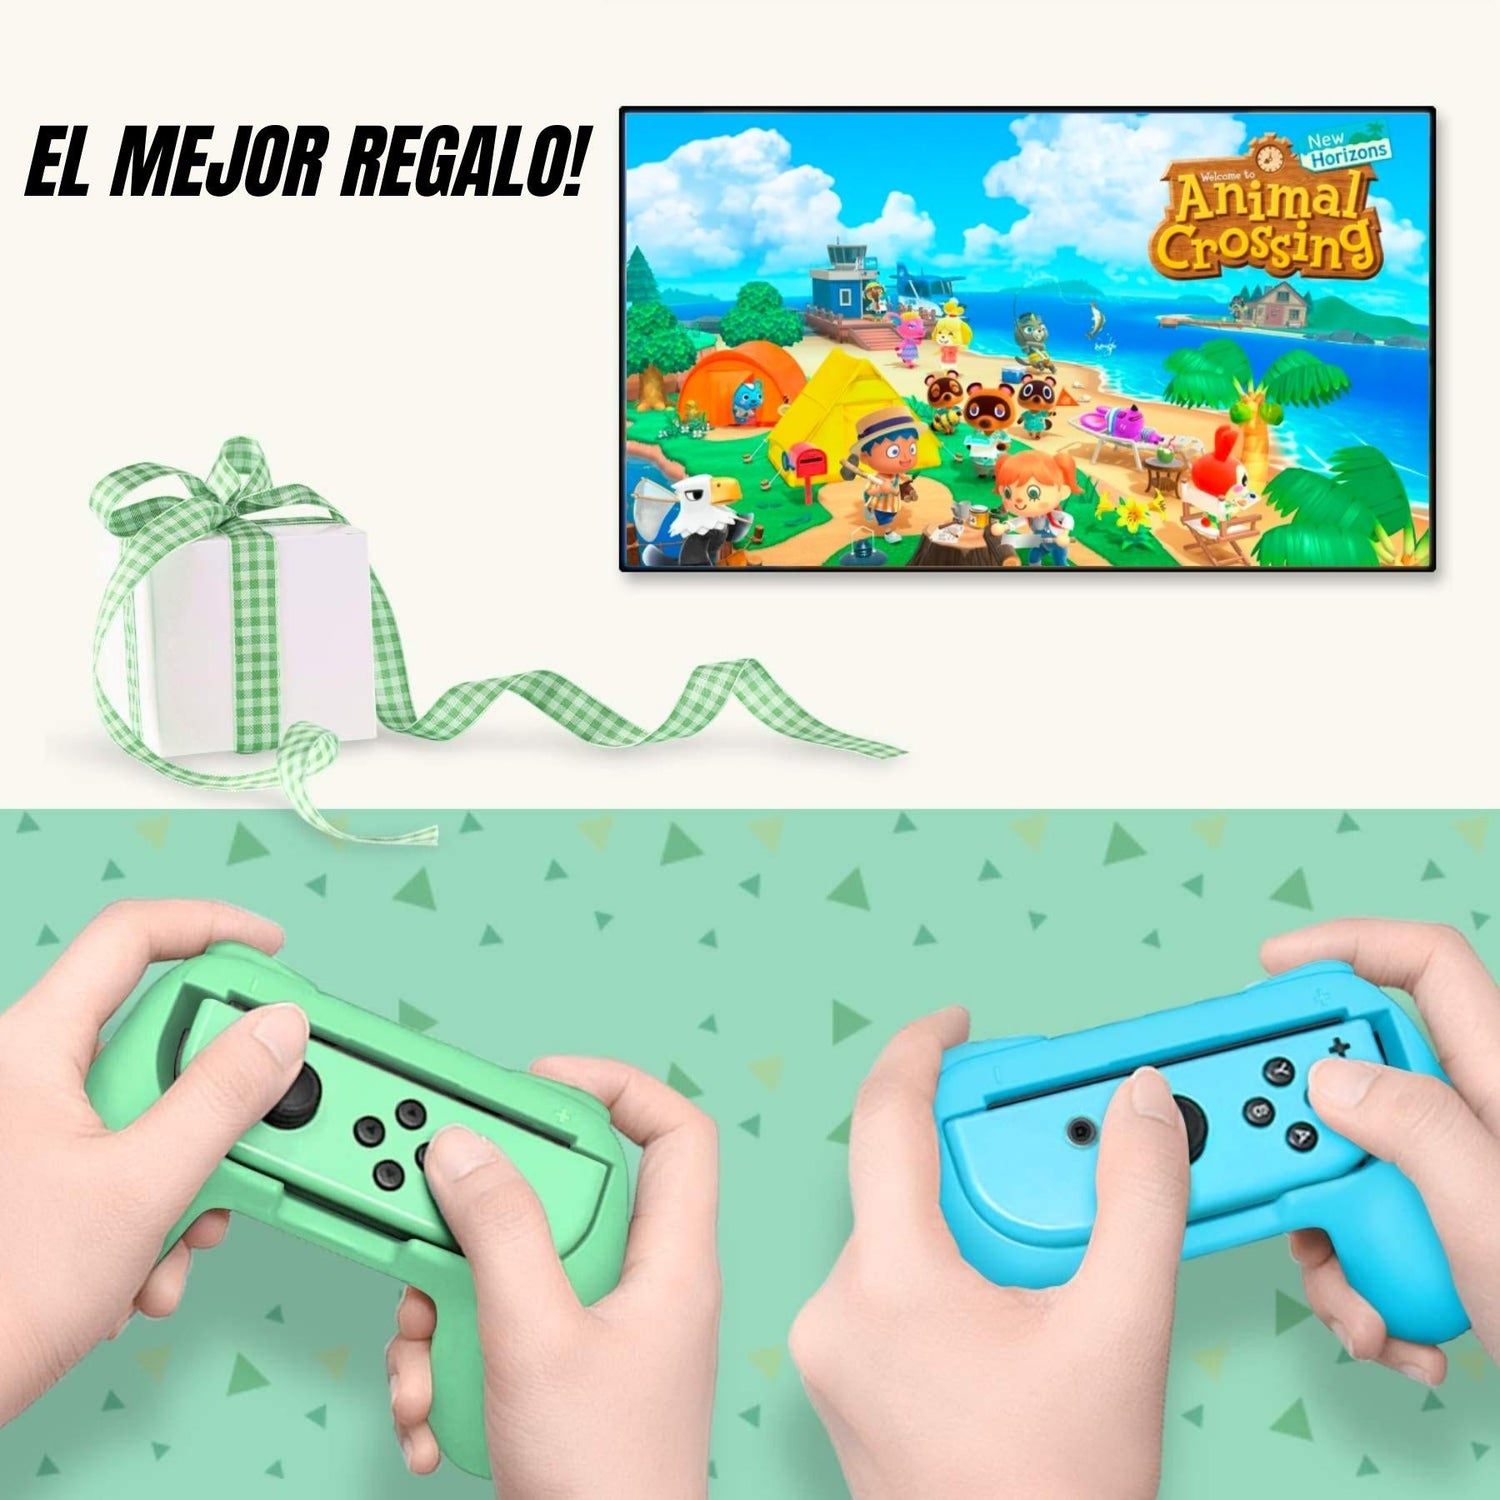 Estuche Para Nintendo Switch OLED Edición Premium Animal Crossing 2022 - TiendaGeek.com